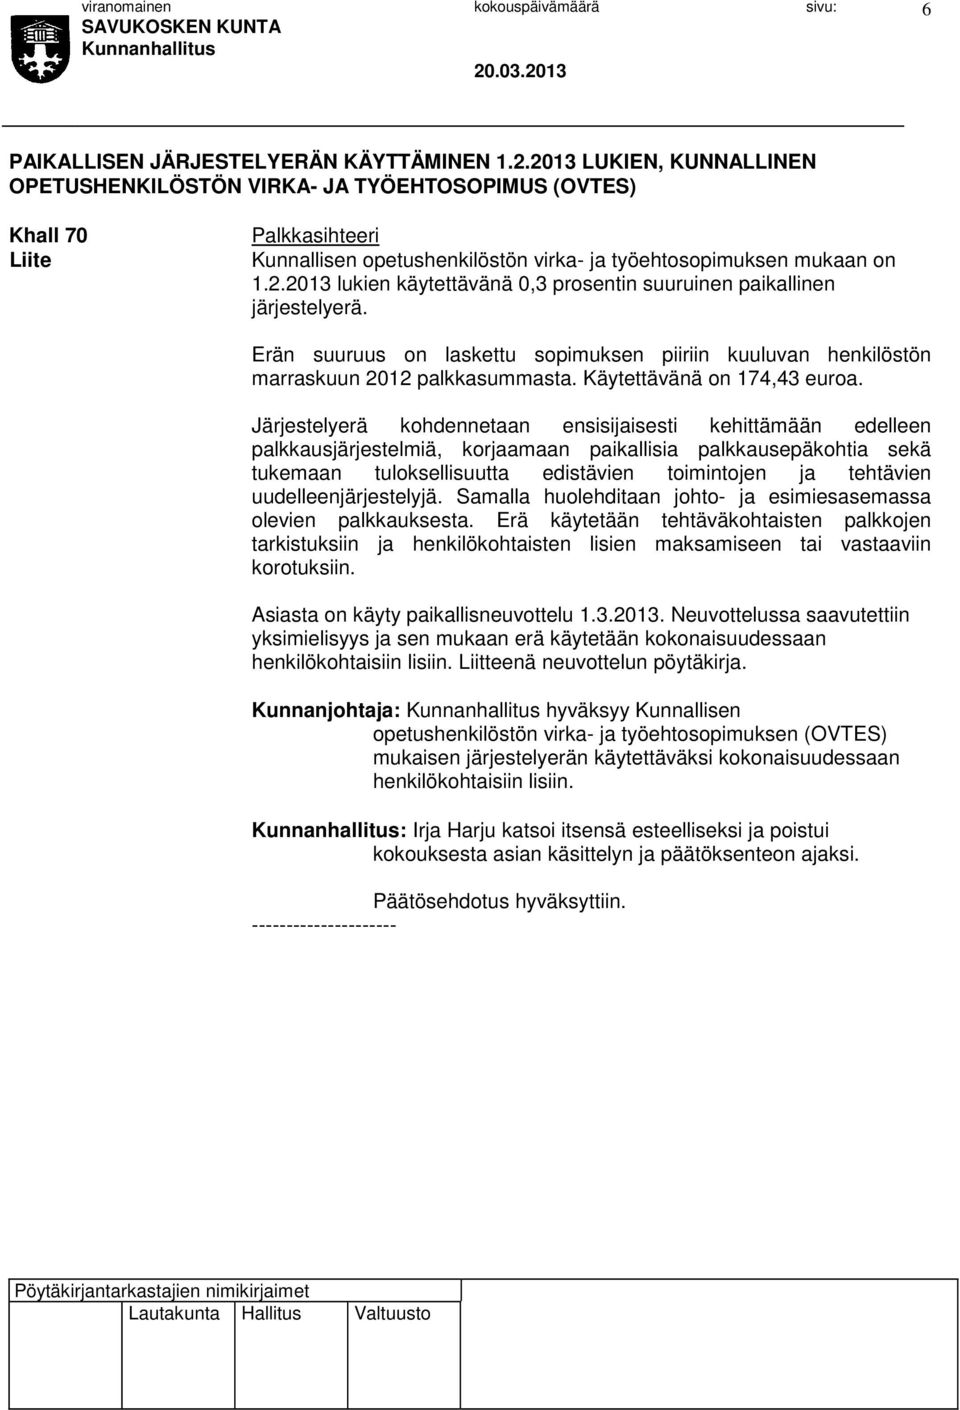 Erän suuruus on laskettu sopimuksen piiriin kuuluvan henkilöstön marraskuun 2012 palkkasummasta. Käytettävänä on 174,43 euroa.